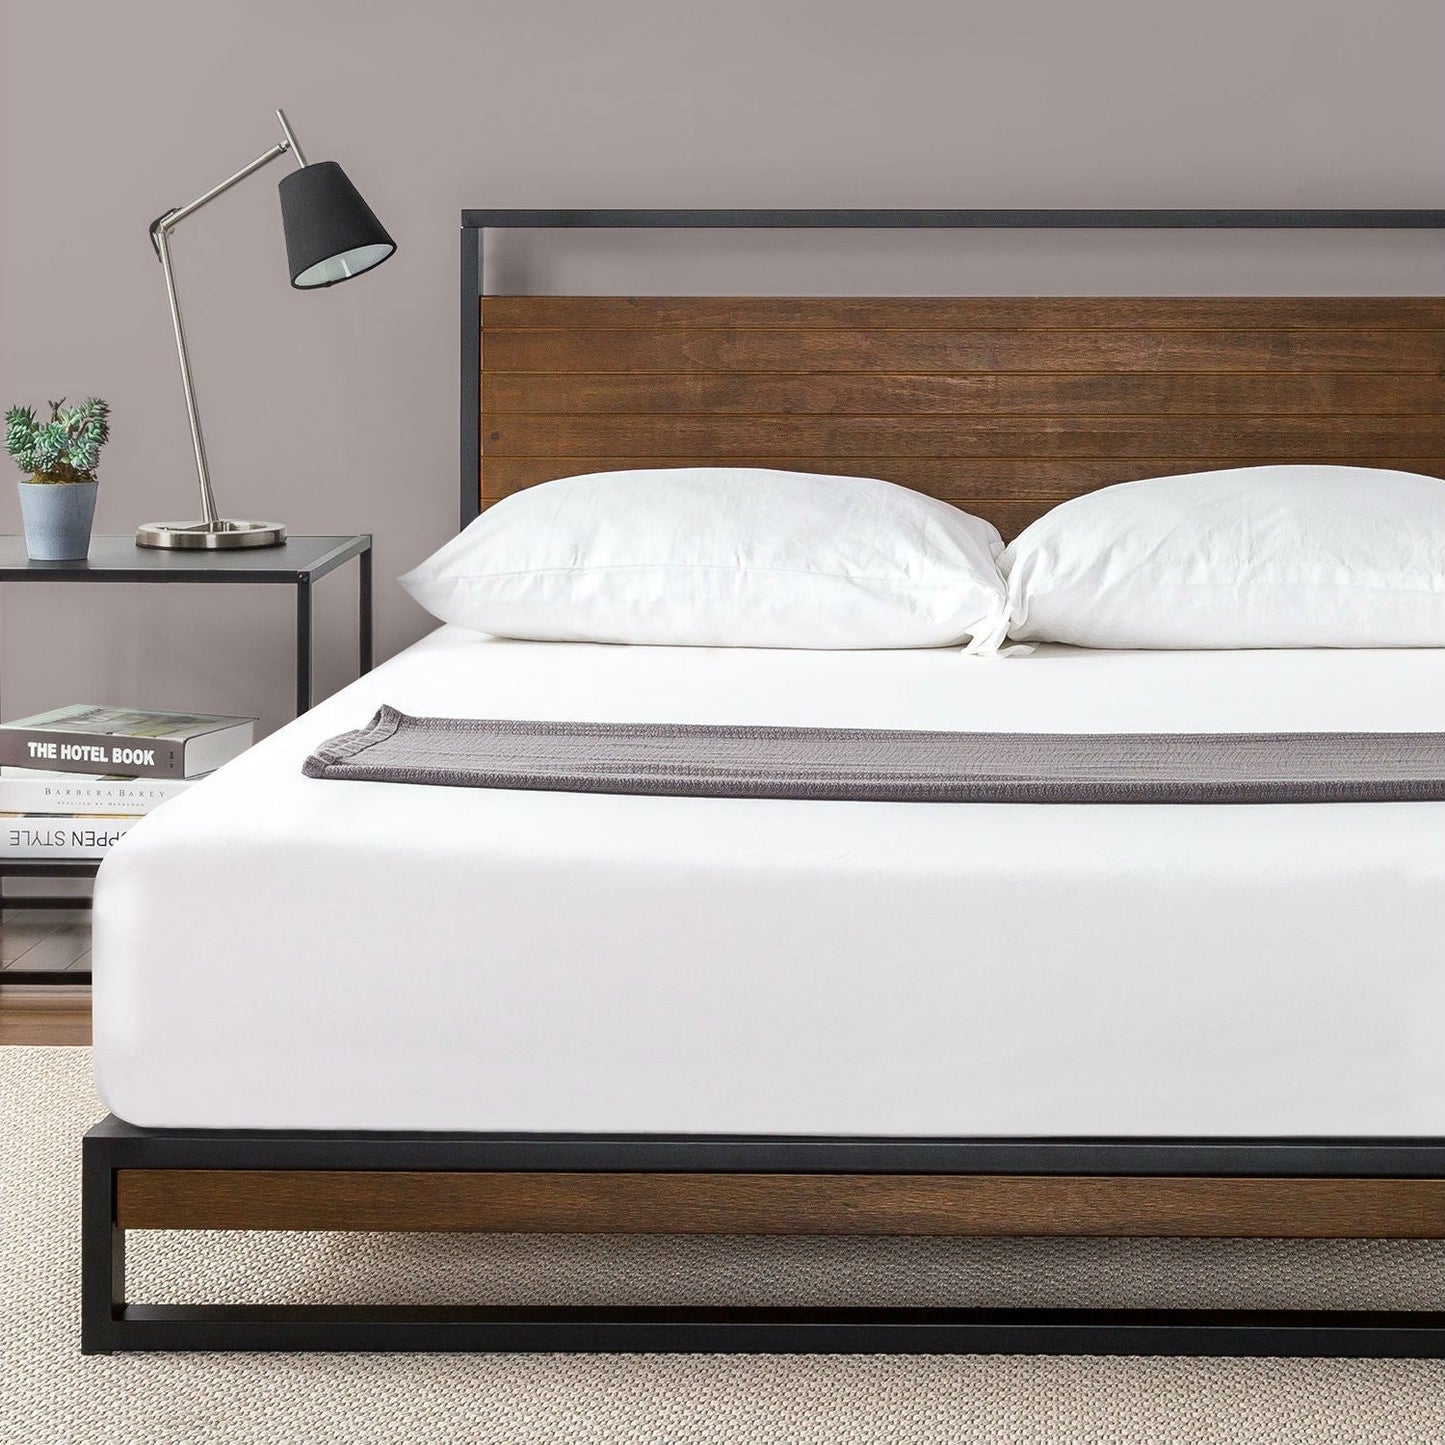 Bedroom > Bed Frames > Platform Beds - Queen Size Metal Wood Platform Bed Frame With Headboard